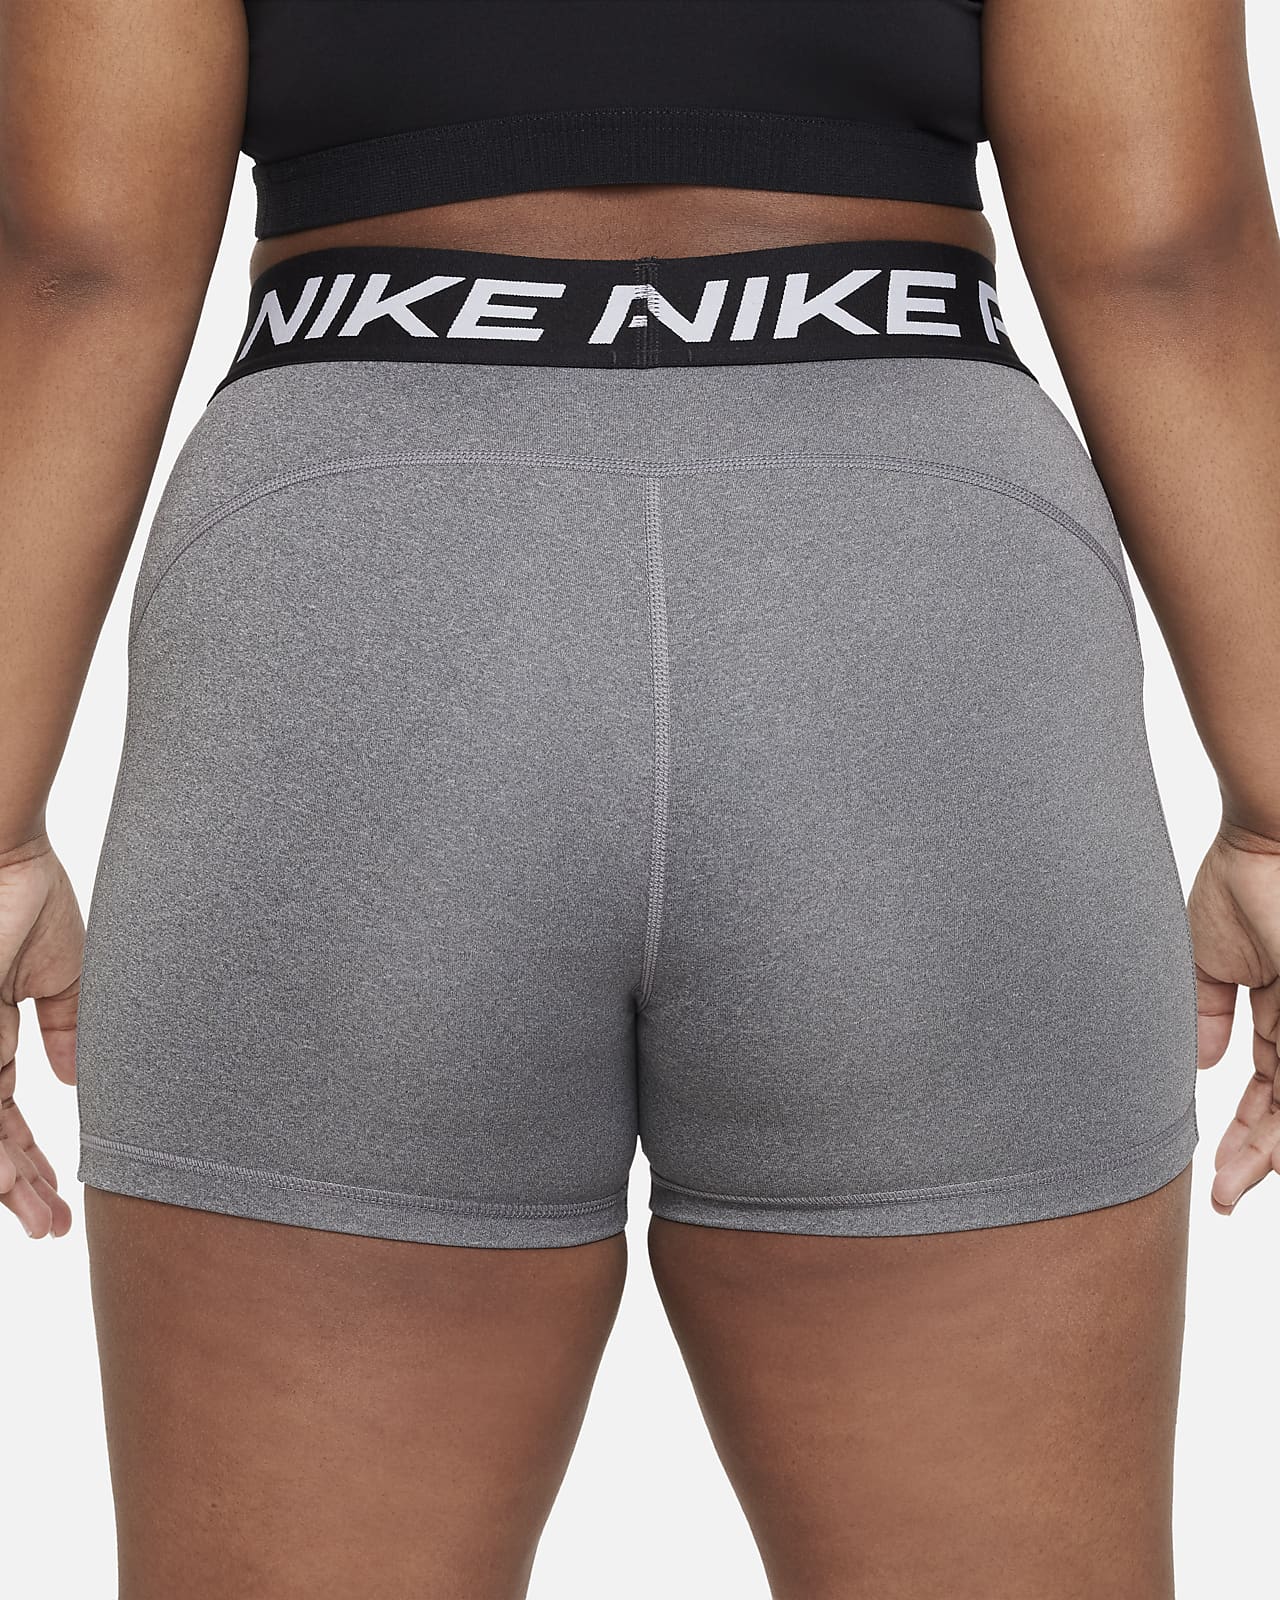 Nike Pro Dri-FIT leggings nagyobb gyerekeknek (lányok) (hosszabb méret)